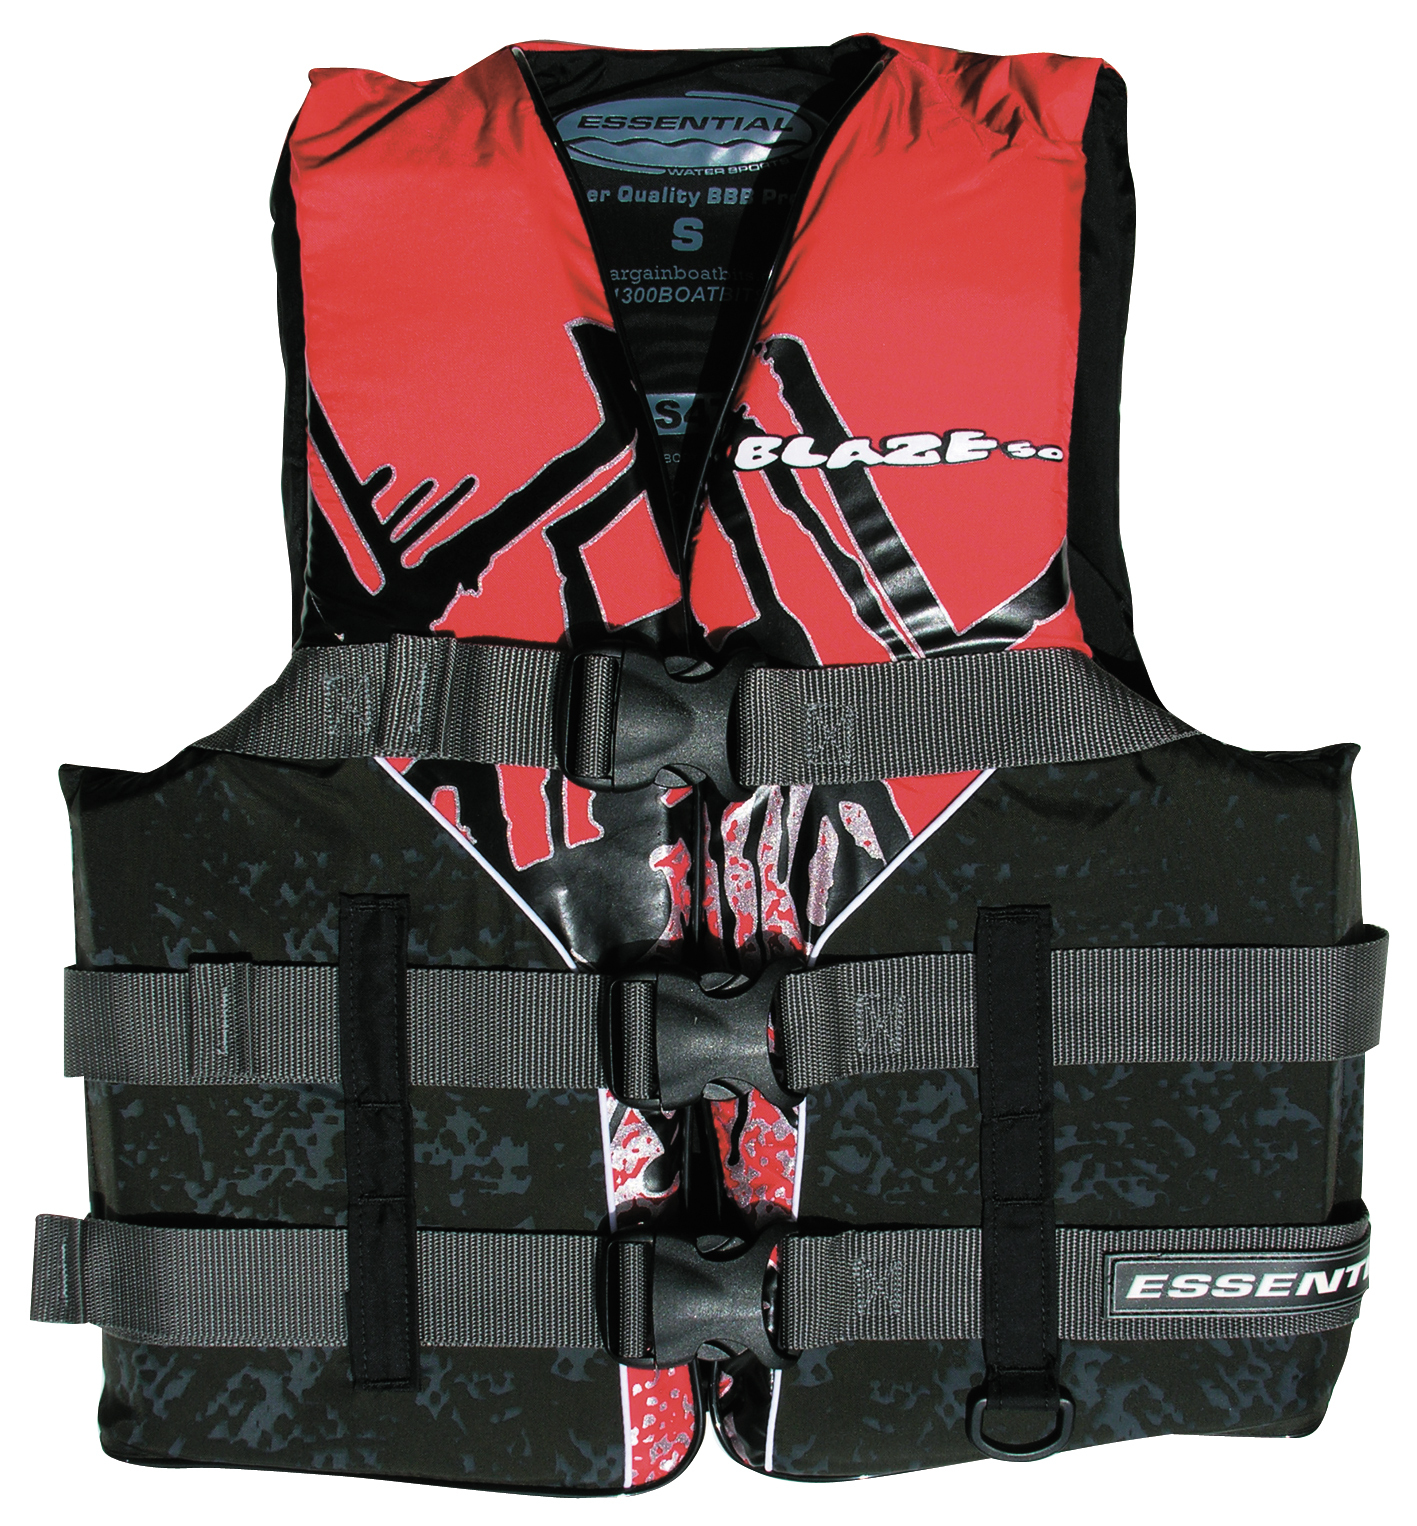 Essential Blaze L50 Adult Small Ski Vest Red